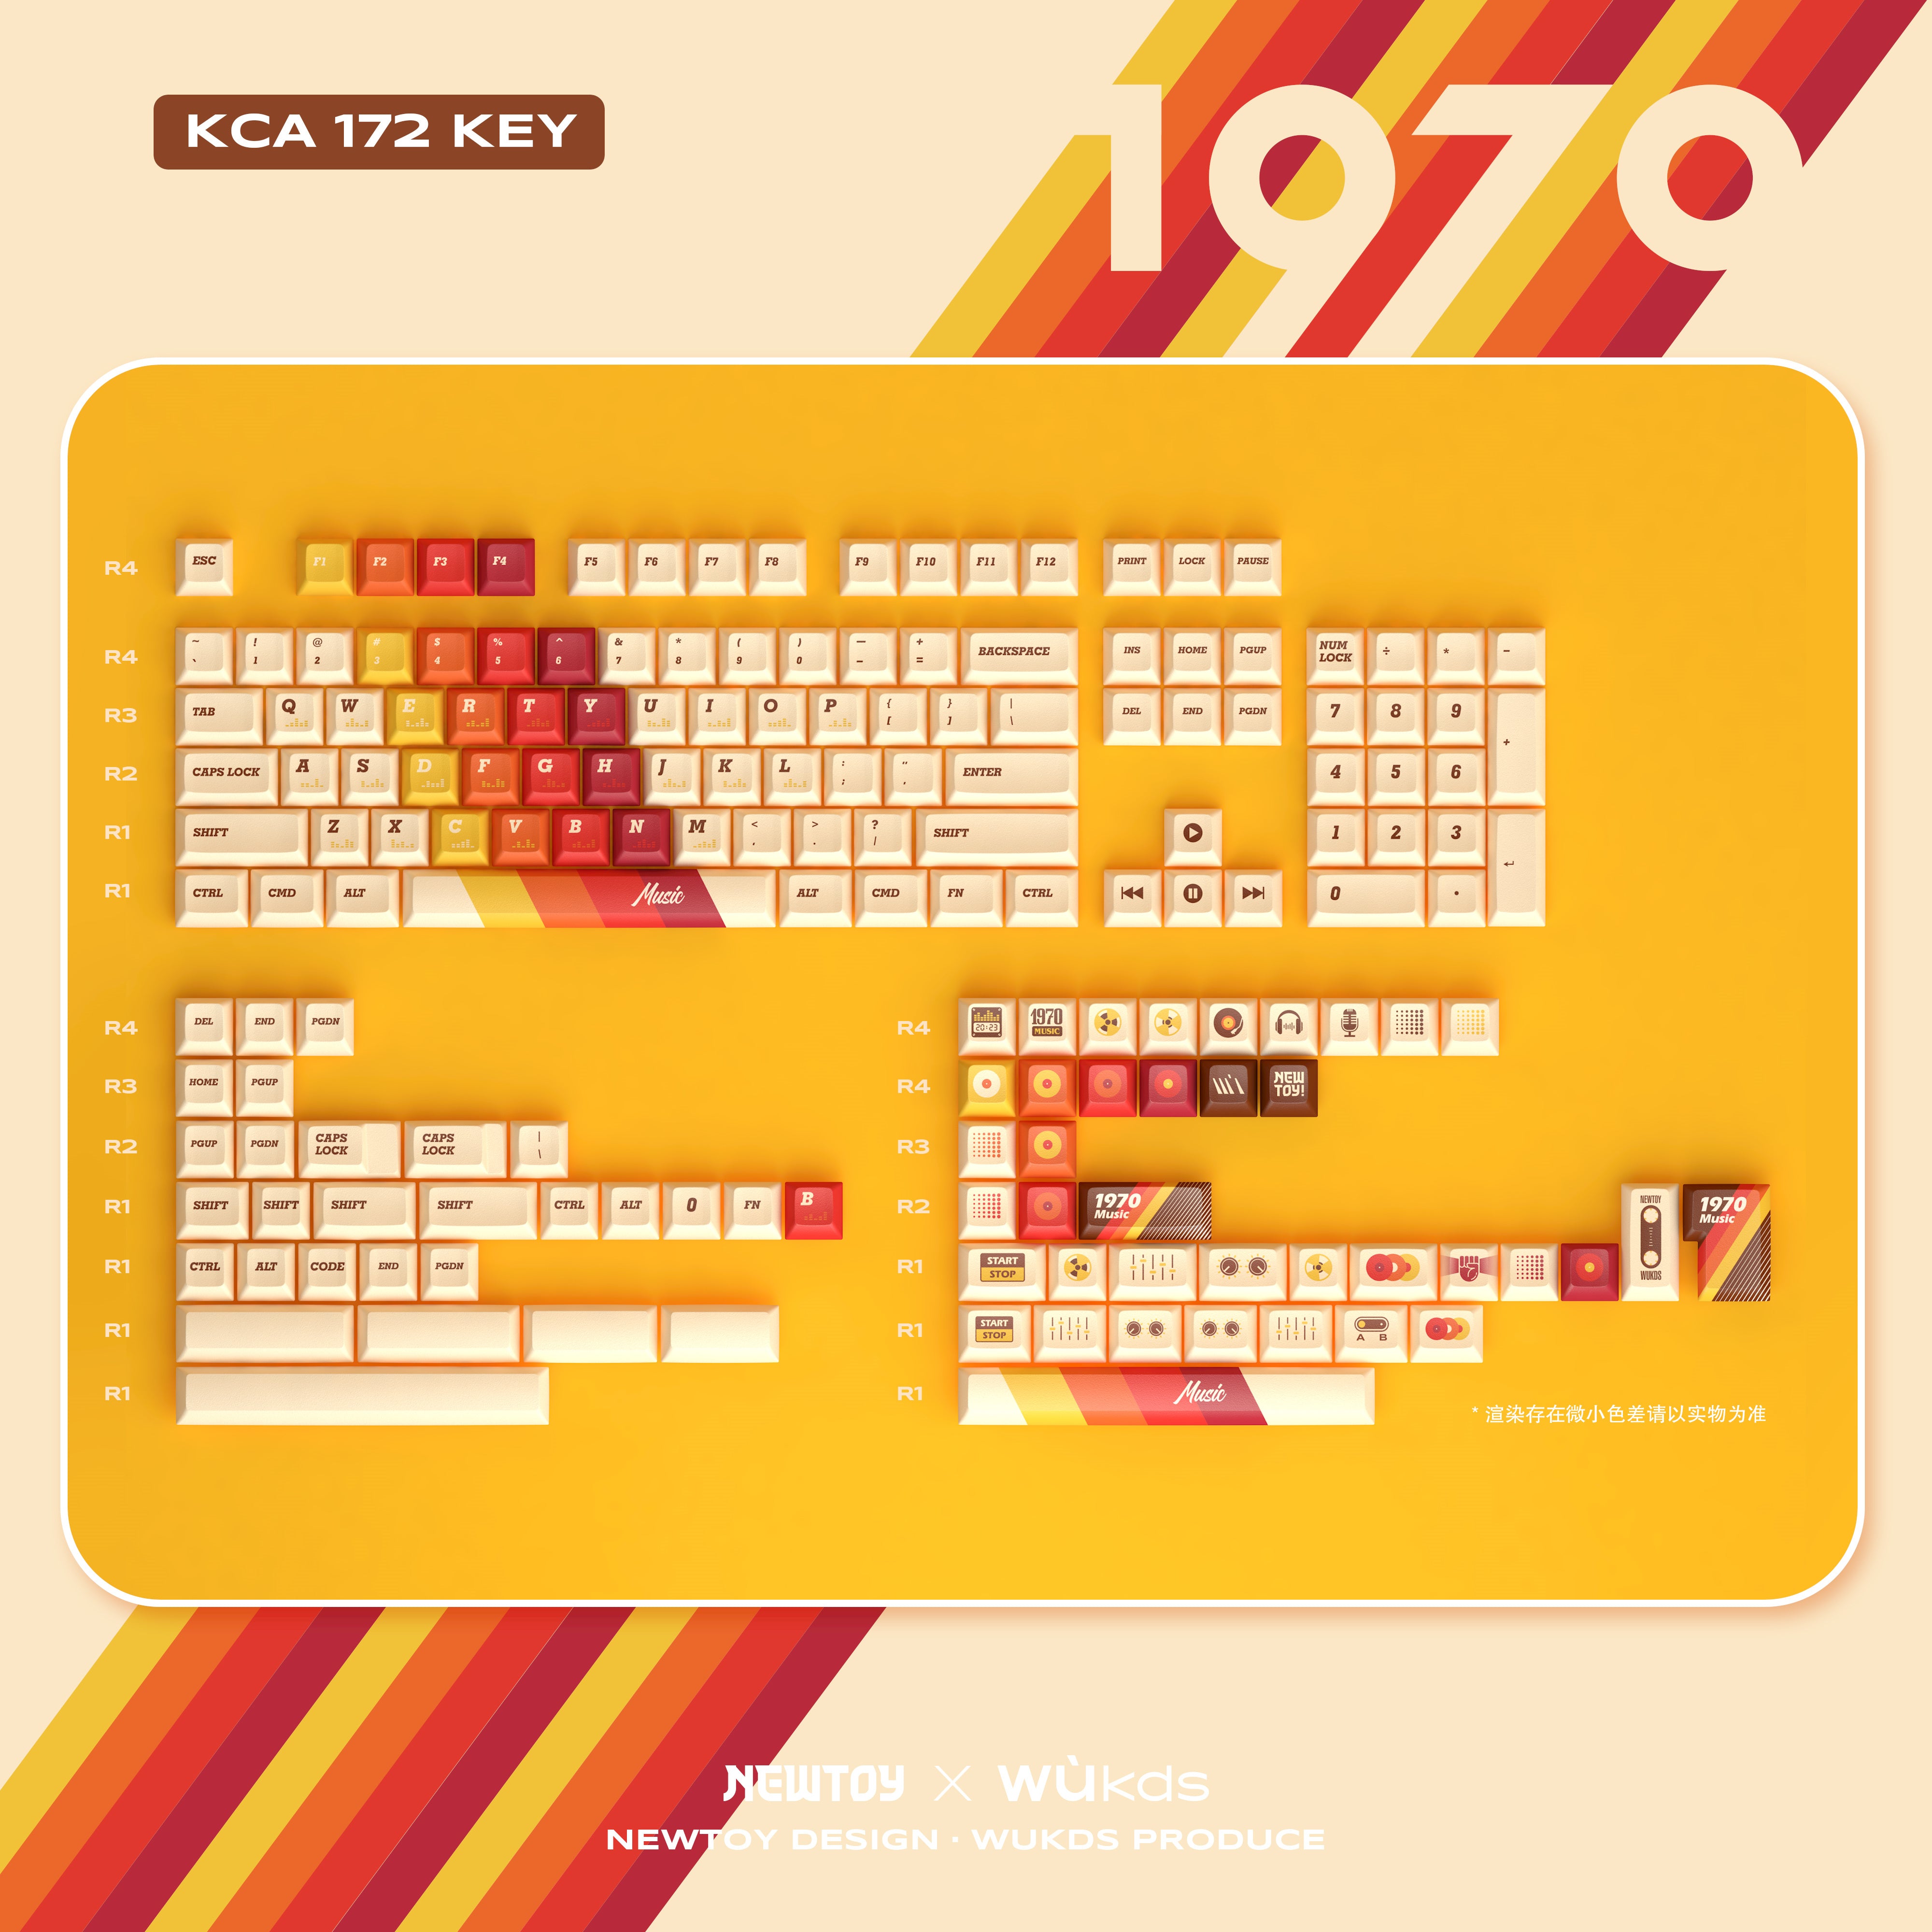 WUkds 1970 Keycap